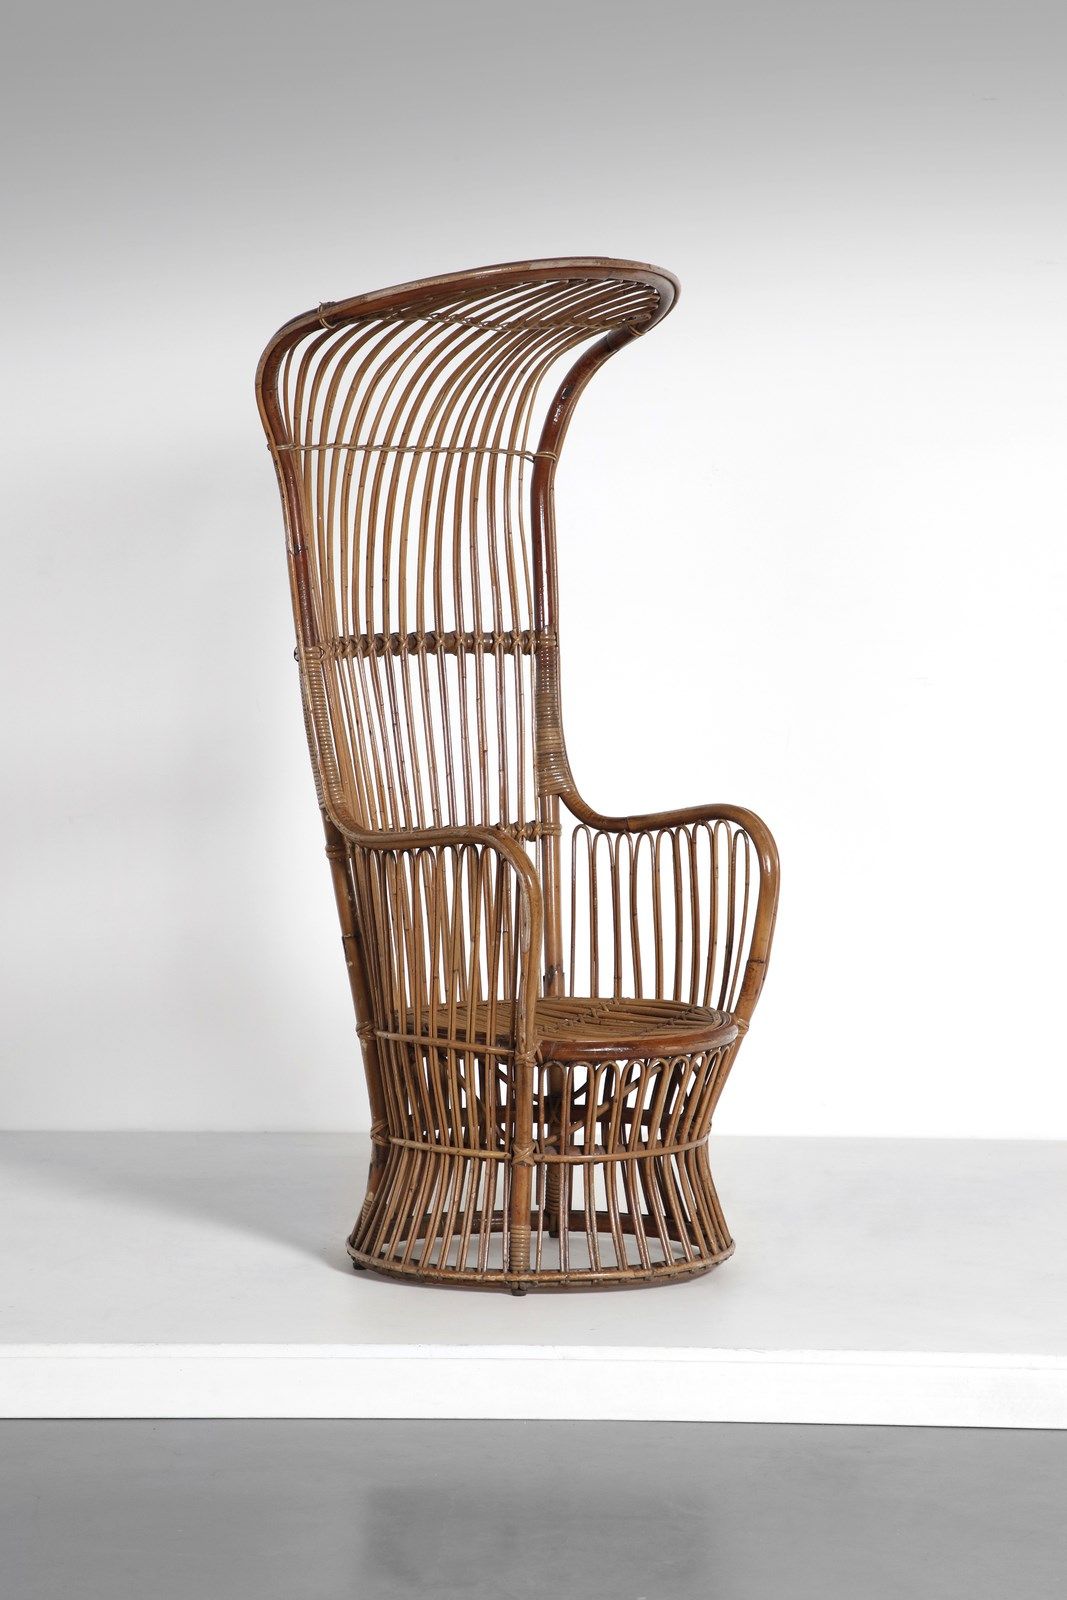 CARMINATI LIO 为Vittorio Bonacina设计的LIO扶手椅。竹子。Cm 70.00 x 150.00 x 60.00. 1950年代/六&hellip;